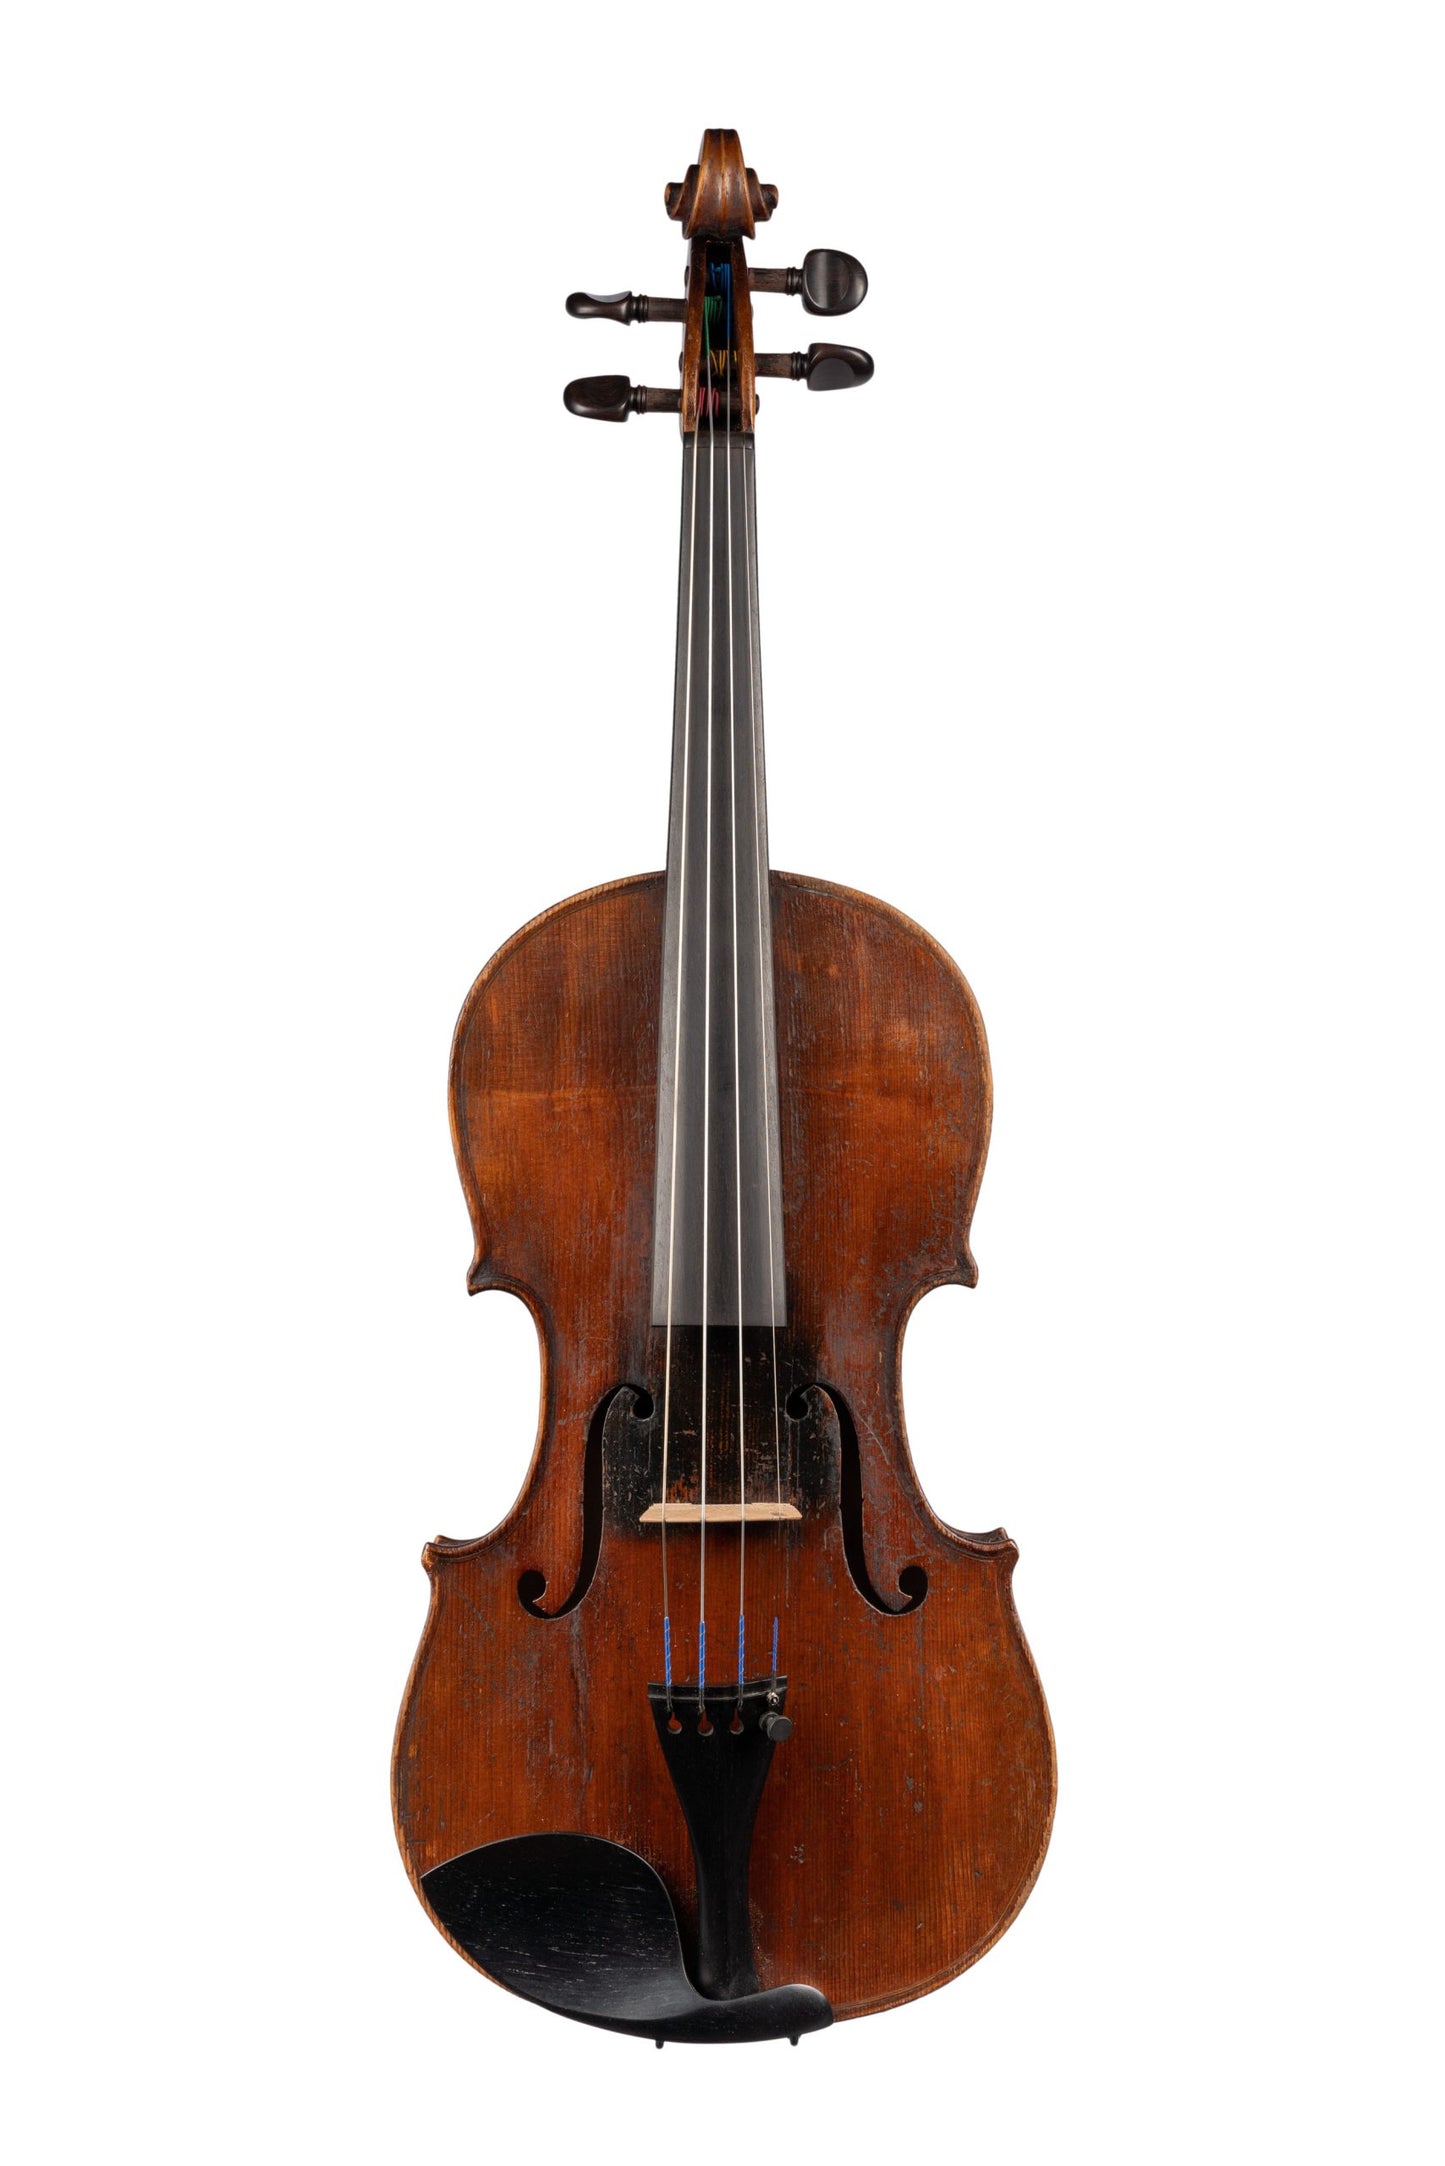 German Violin by German Workshop, GE-175